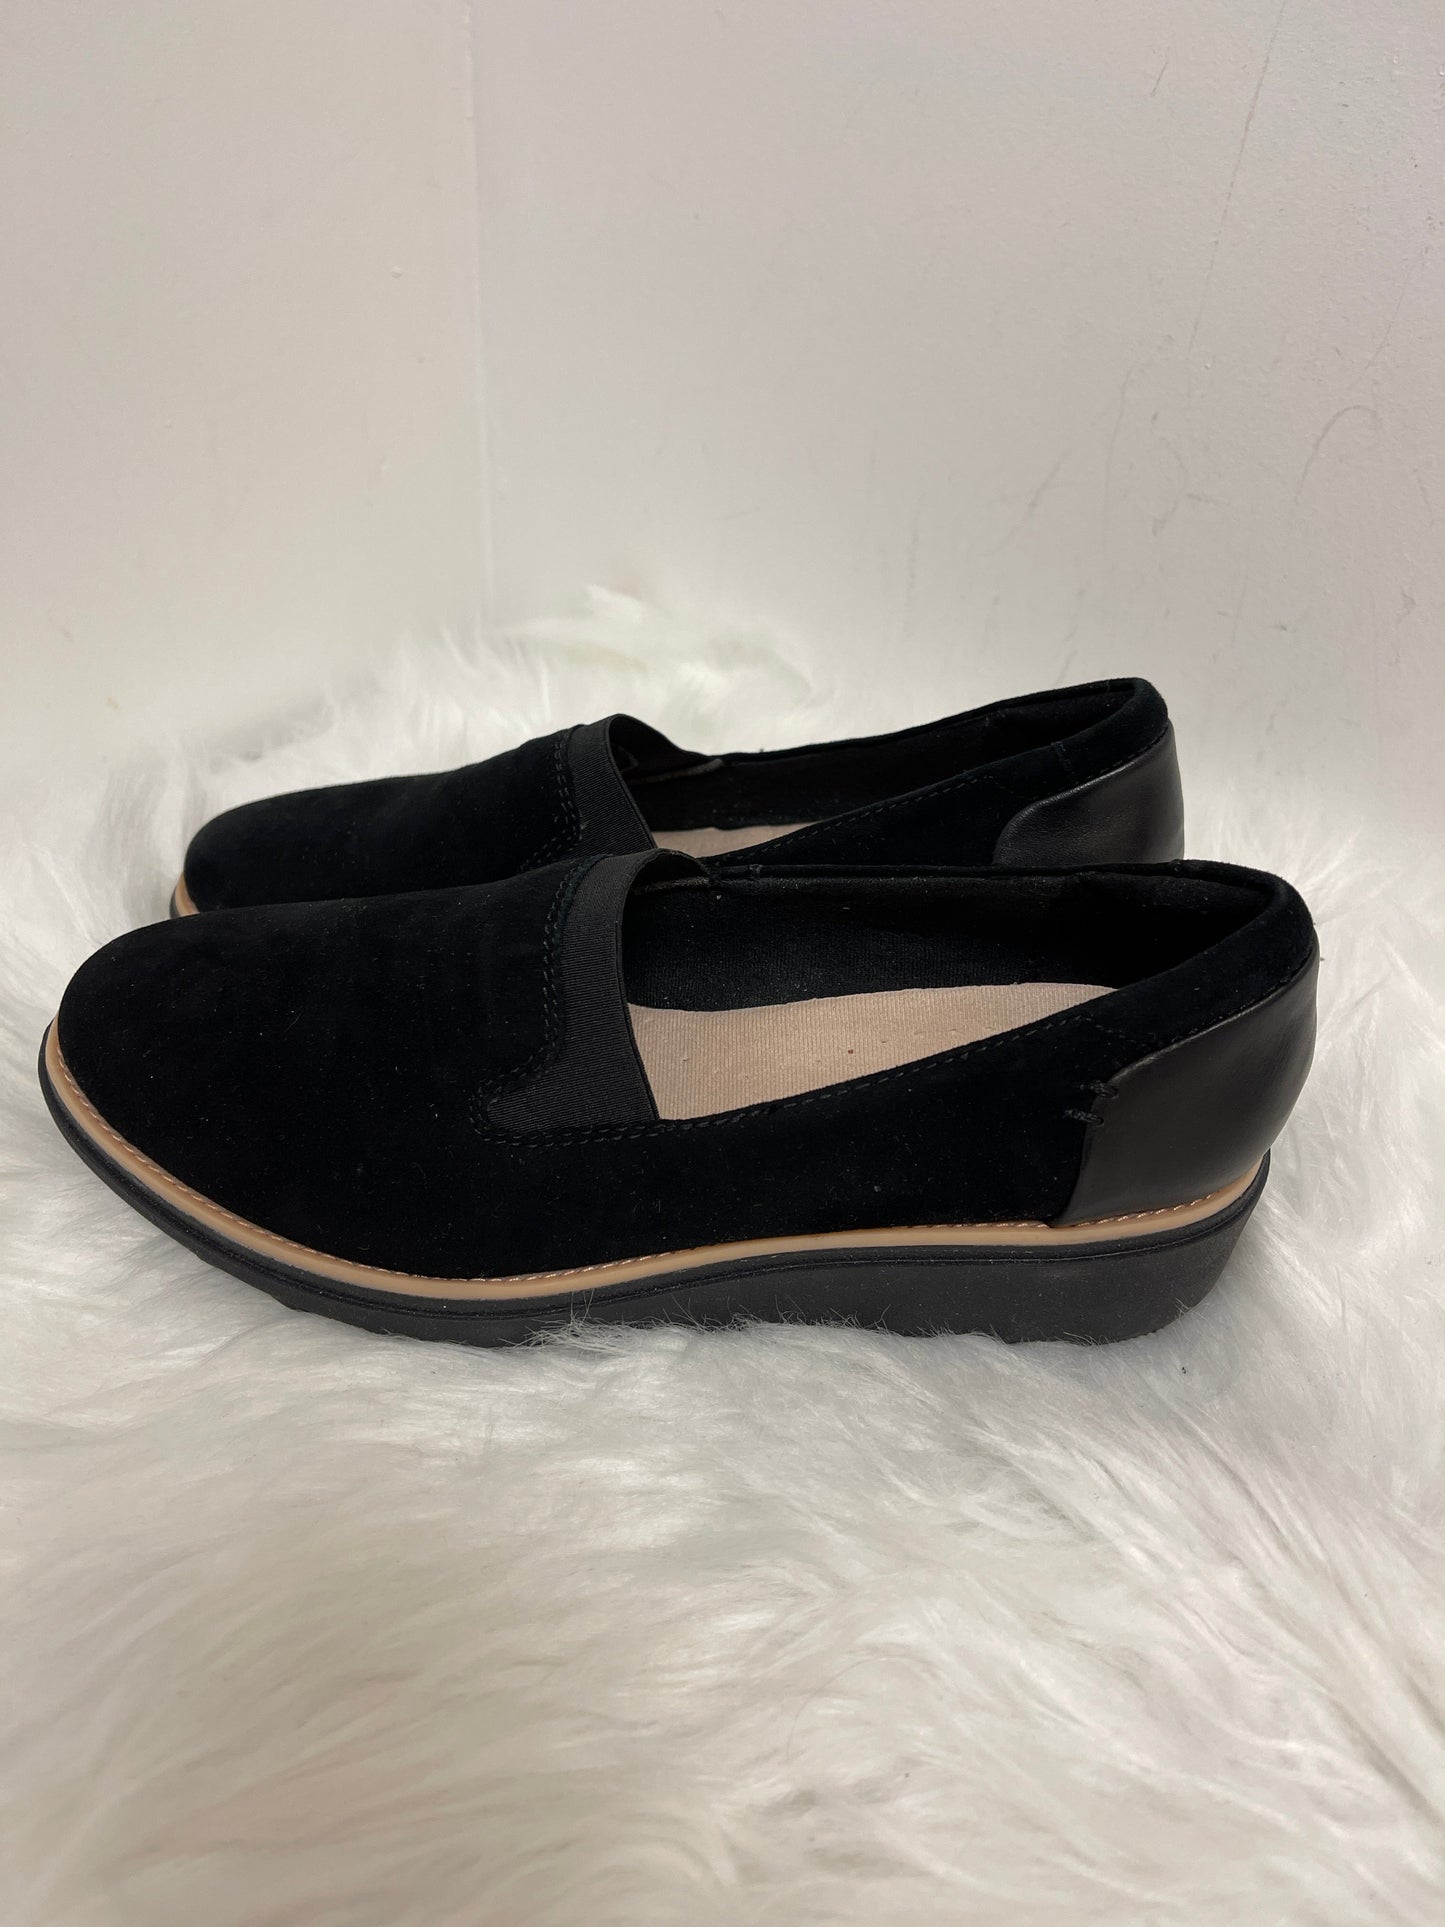 Black Shoes Flats Clarks, Size 6